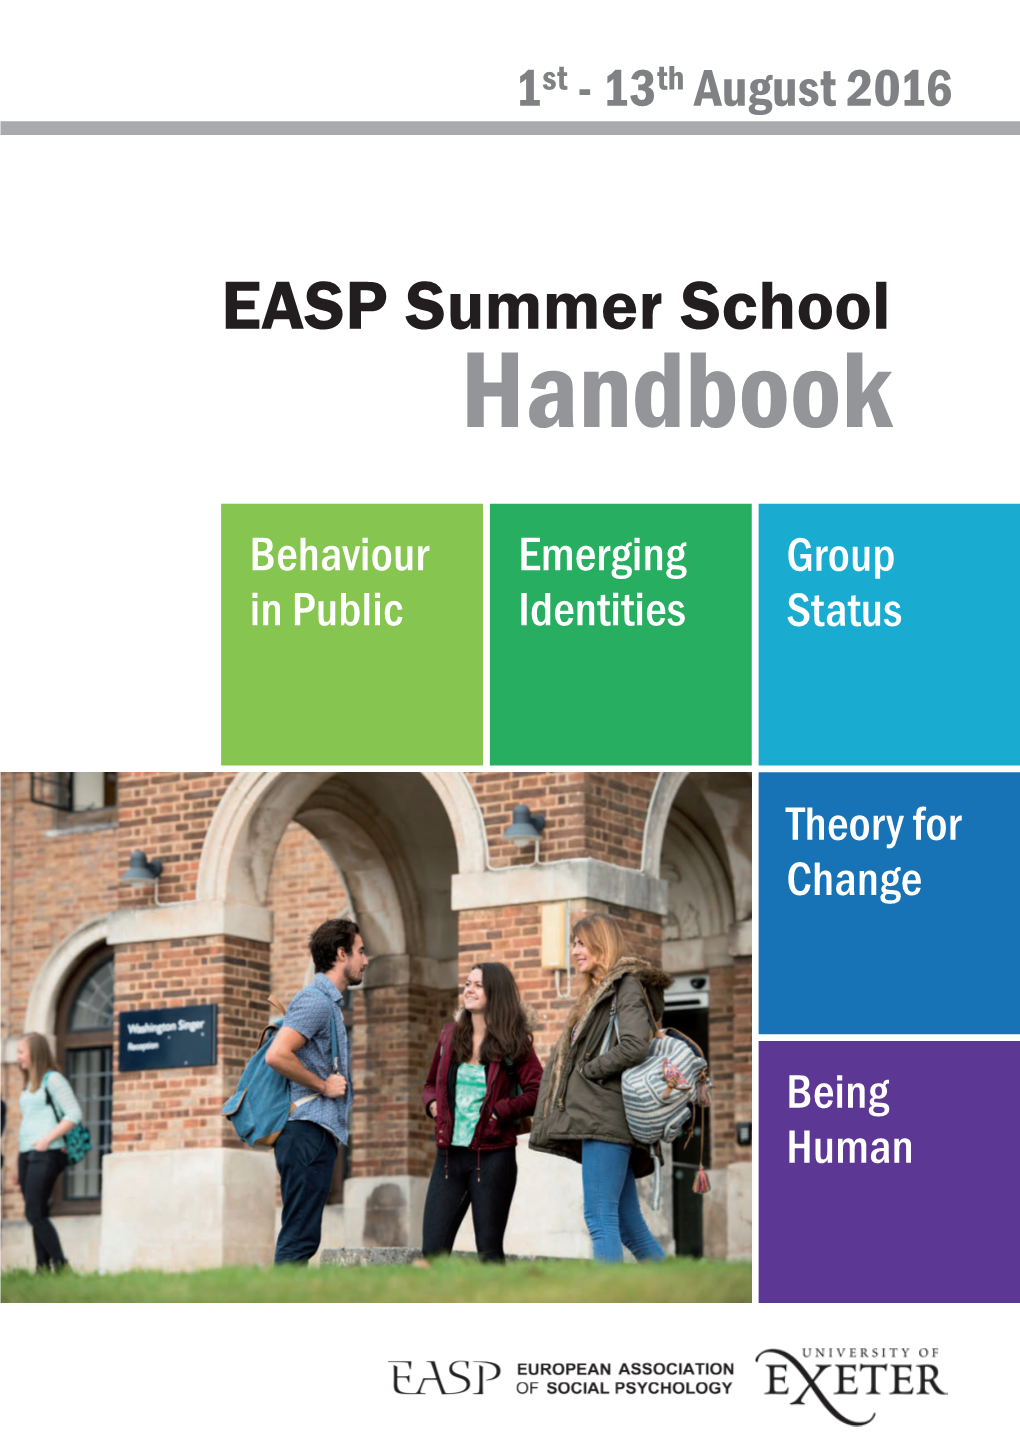 EASP Summer School Handbook (Exeter, 2016)